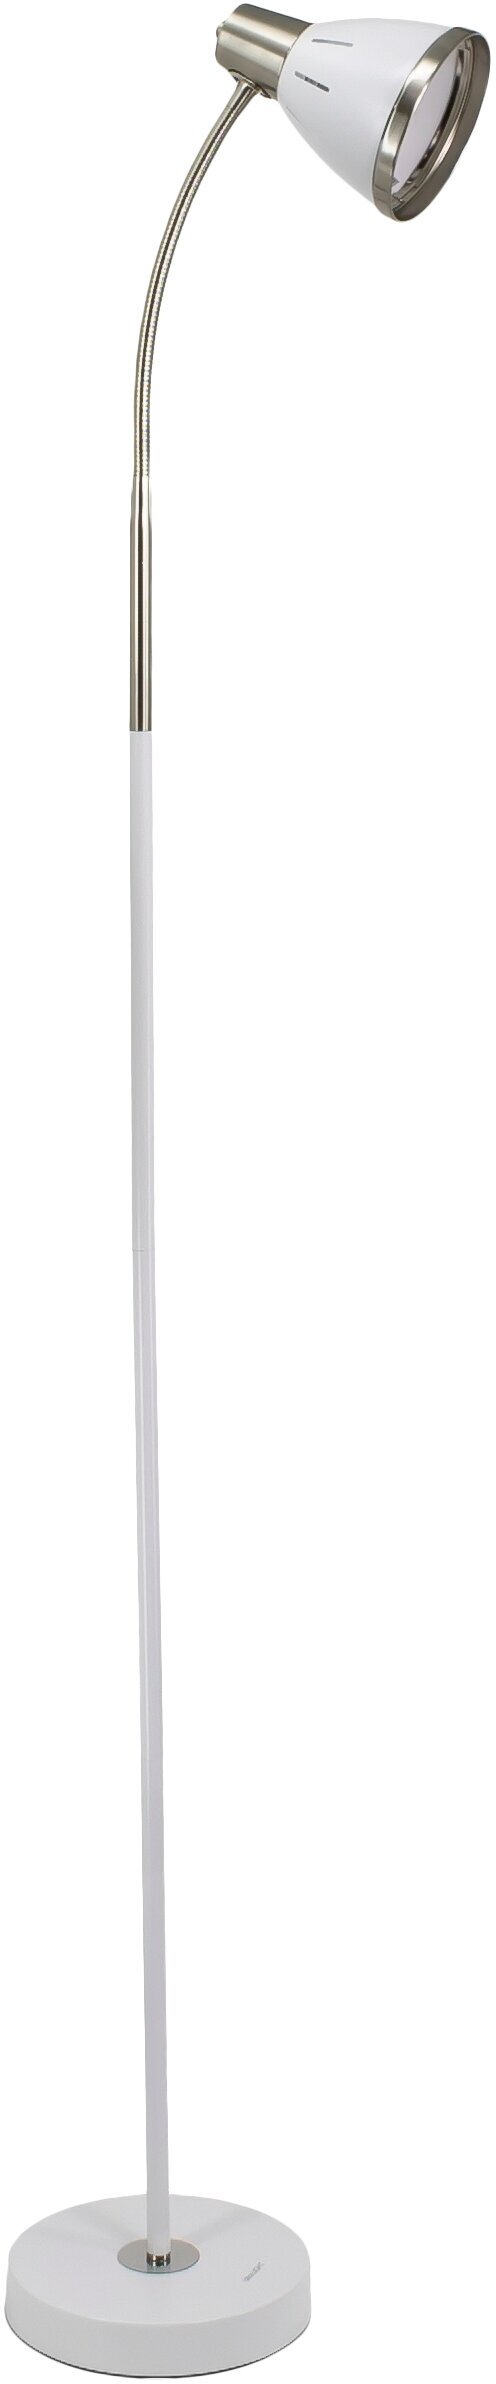 Напольный светильник с гибкой стойкой, сменная лампочка Ultra LIGHT MT2018 60Вт. Торшер. Белый жемчуг.